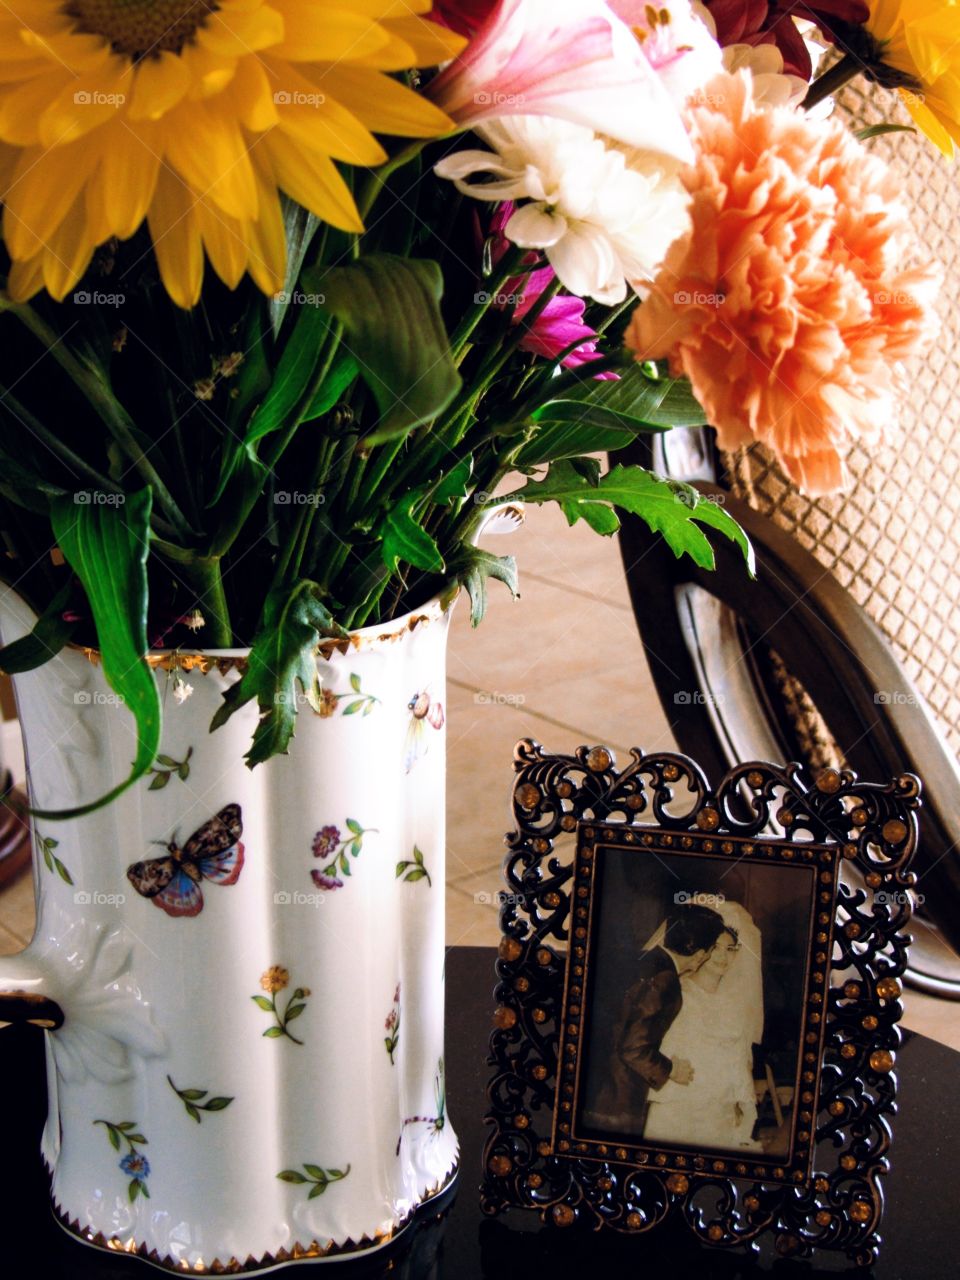 Wedding frame near the flower vase